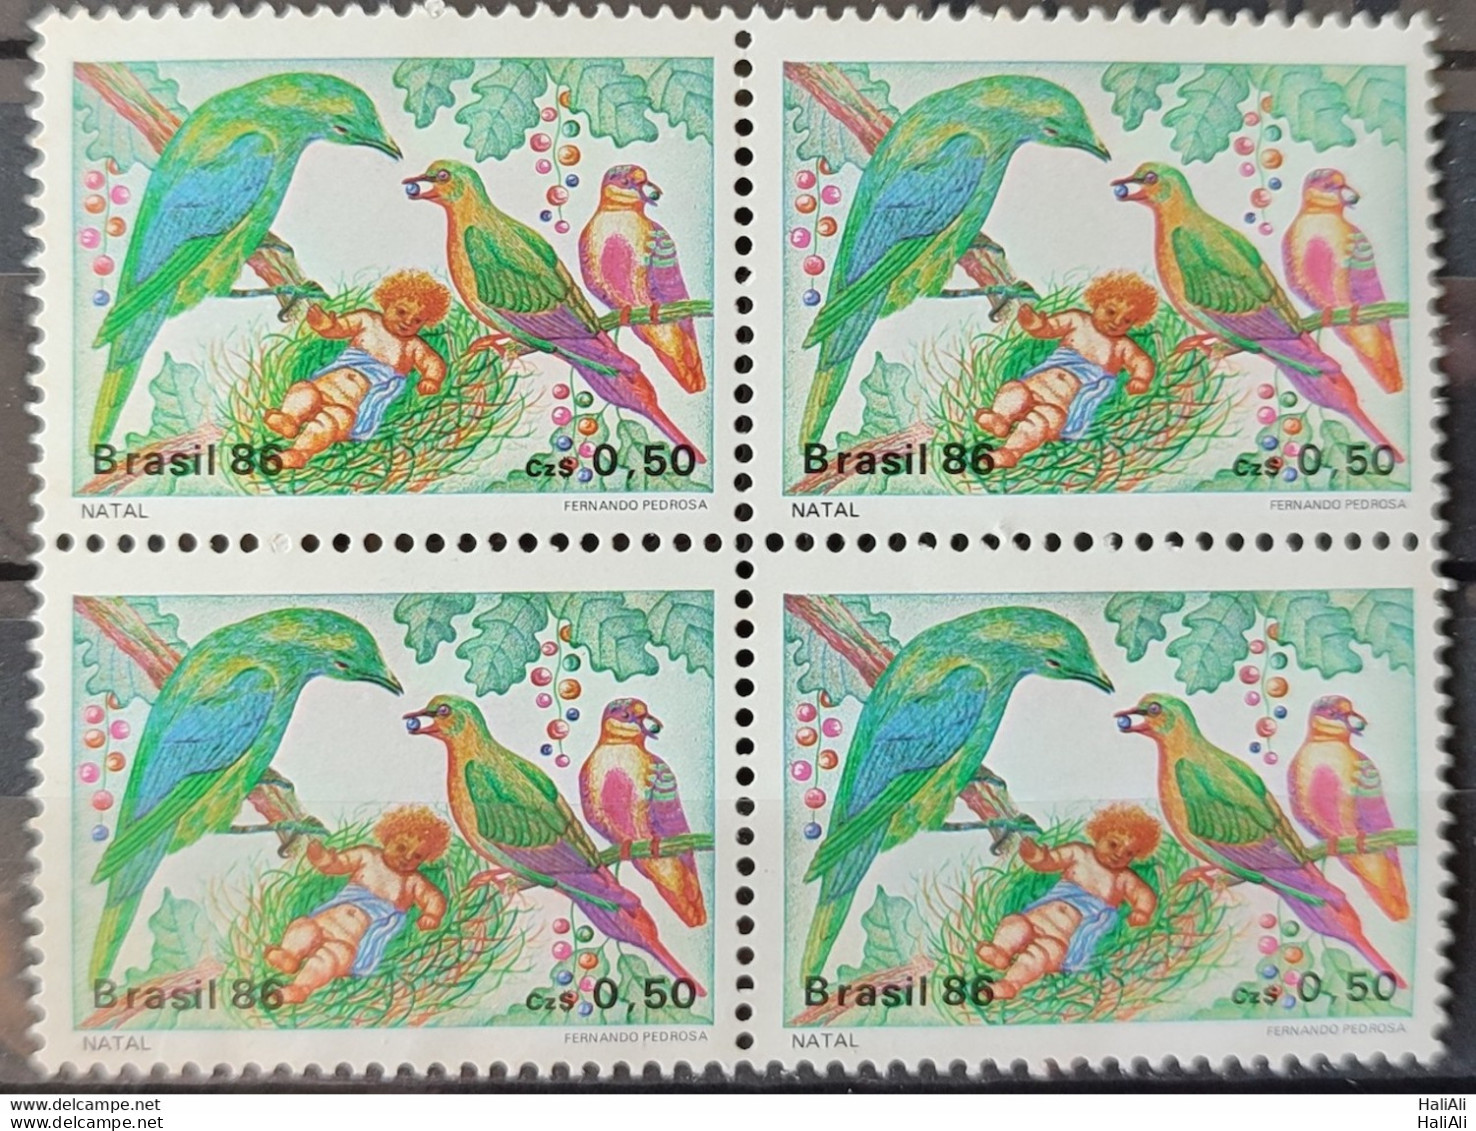 C 1530 Brazil Stamp Christmas Religion Birds 1986 Block Of 4.jpg - Neufs